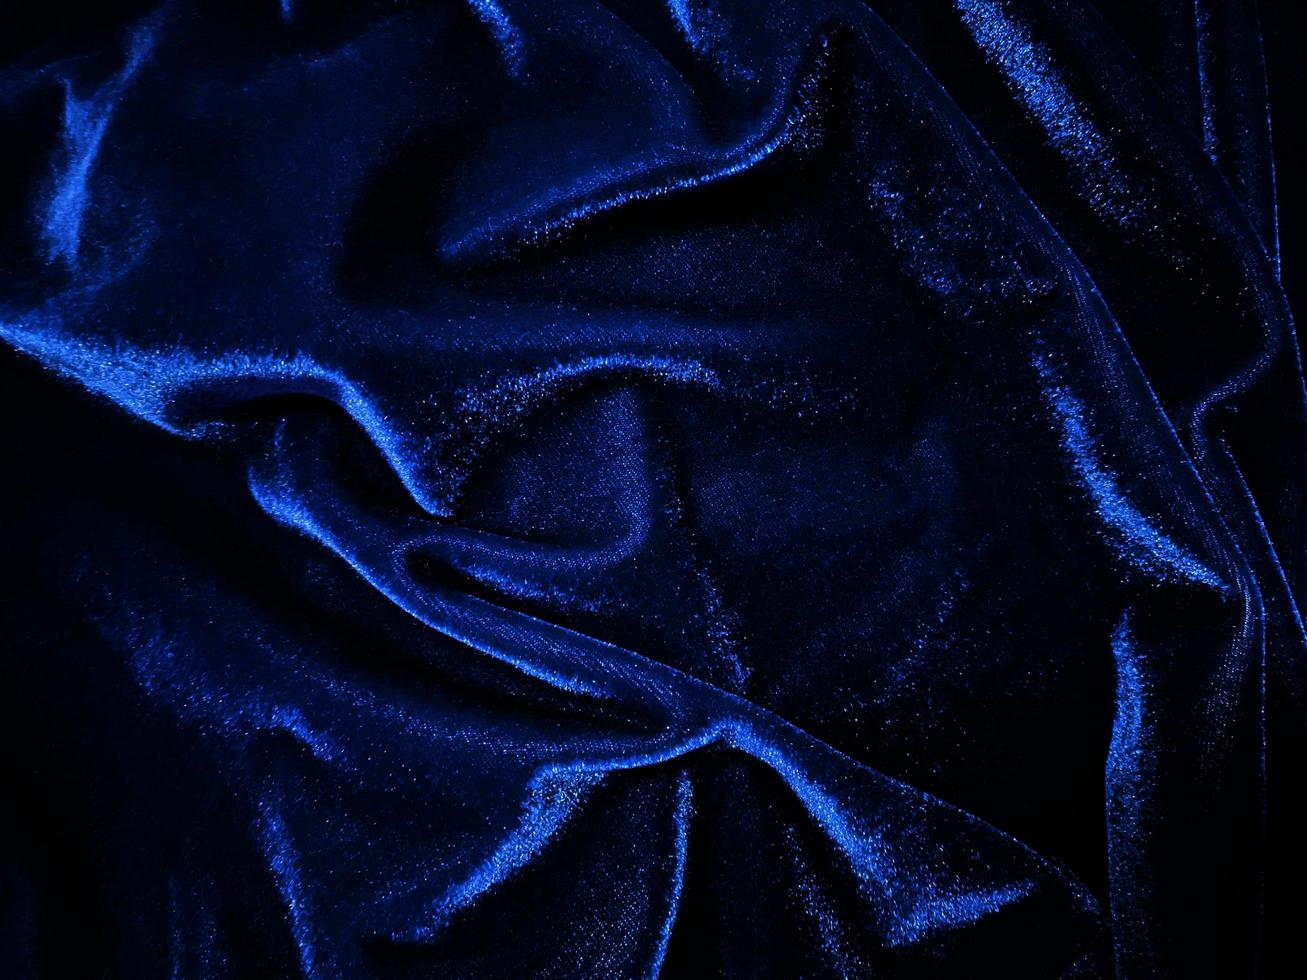 texture de tissu de velours bleu utilisée comme arrière-plan. fond de tissu bleu vide de matière textile douce et lisse. il y a de l'espace pour le texte. photo